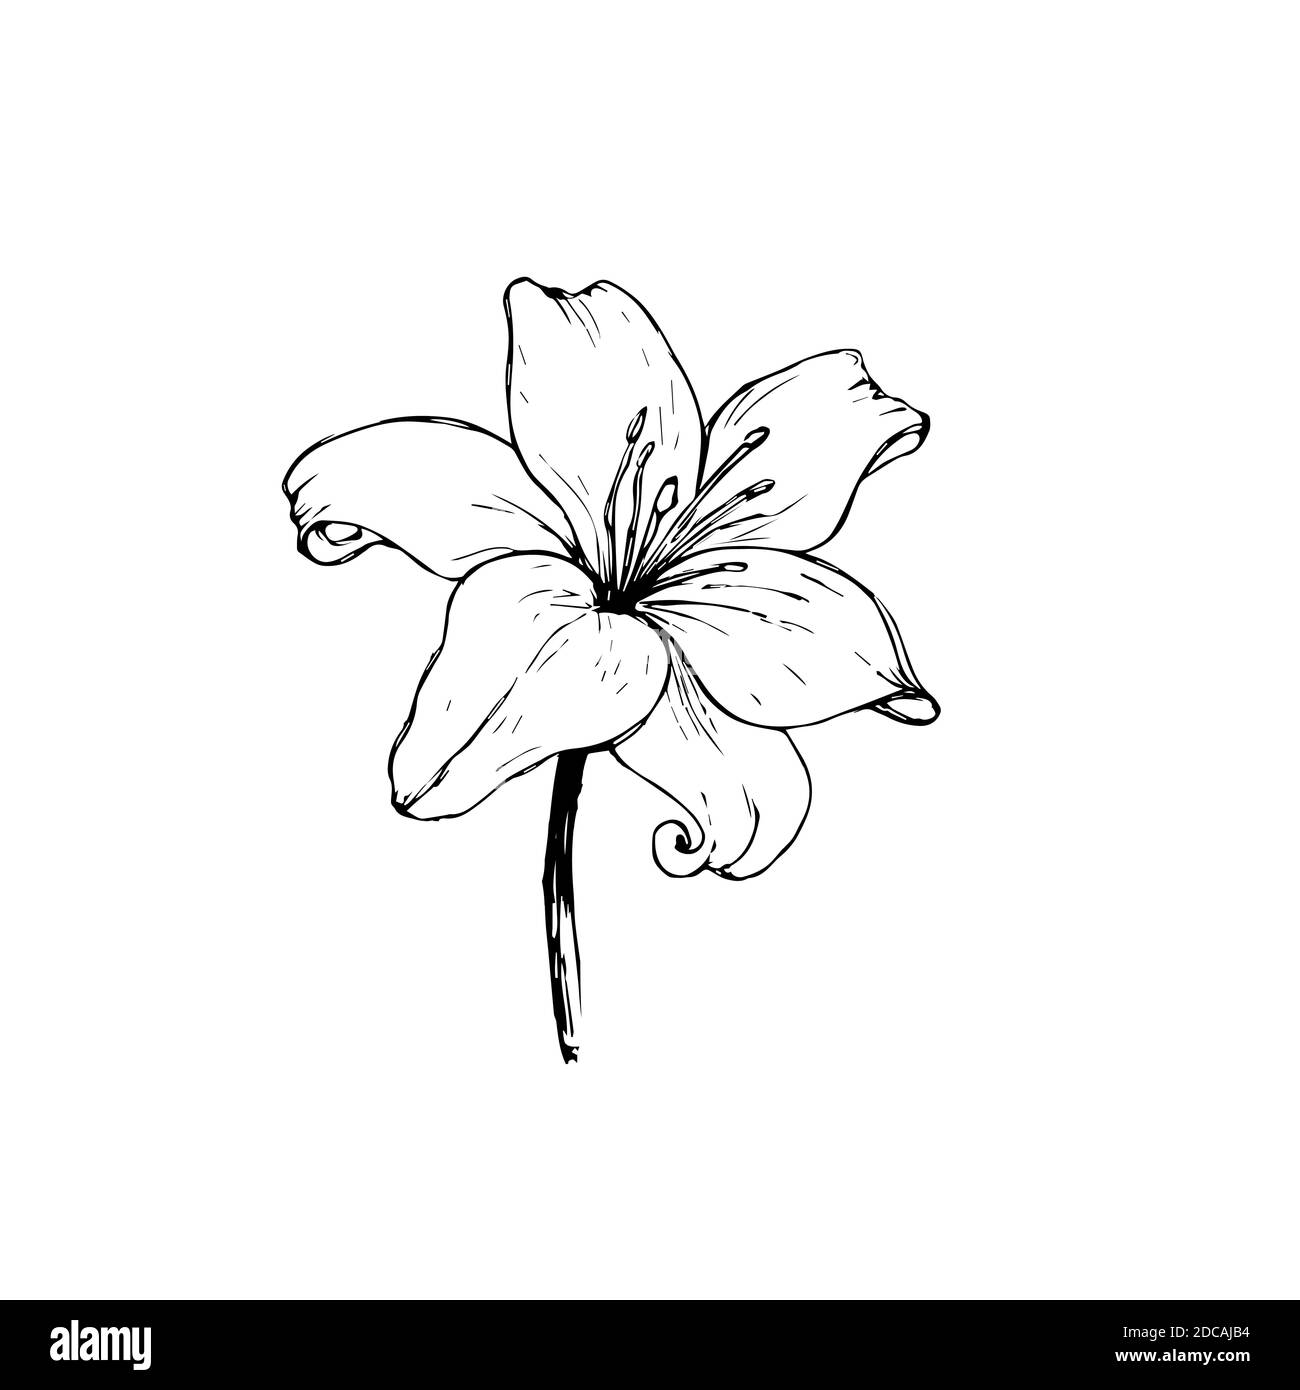 Vektor schwarze Umrisse von Lily Blumen isoliert auf einem weißen Hintergrund. Aufkleber, Tattoo, Skizze Stockfoto